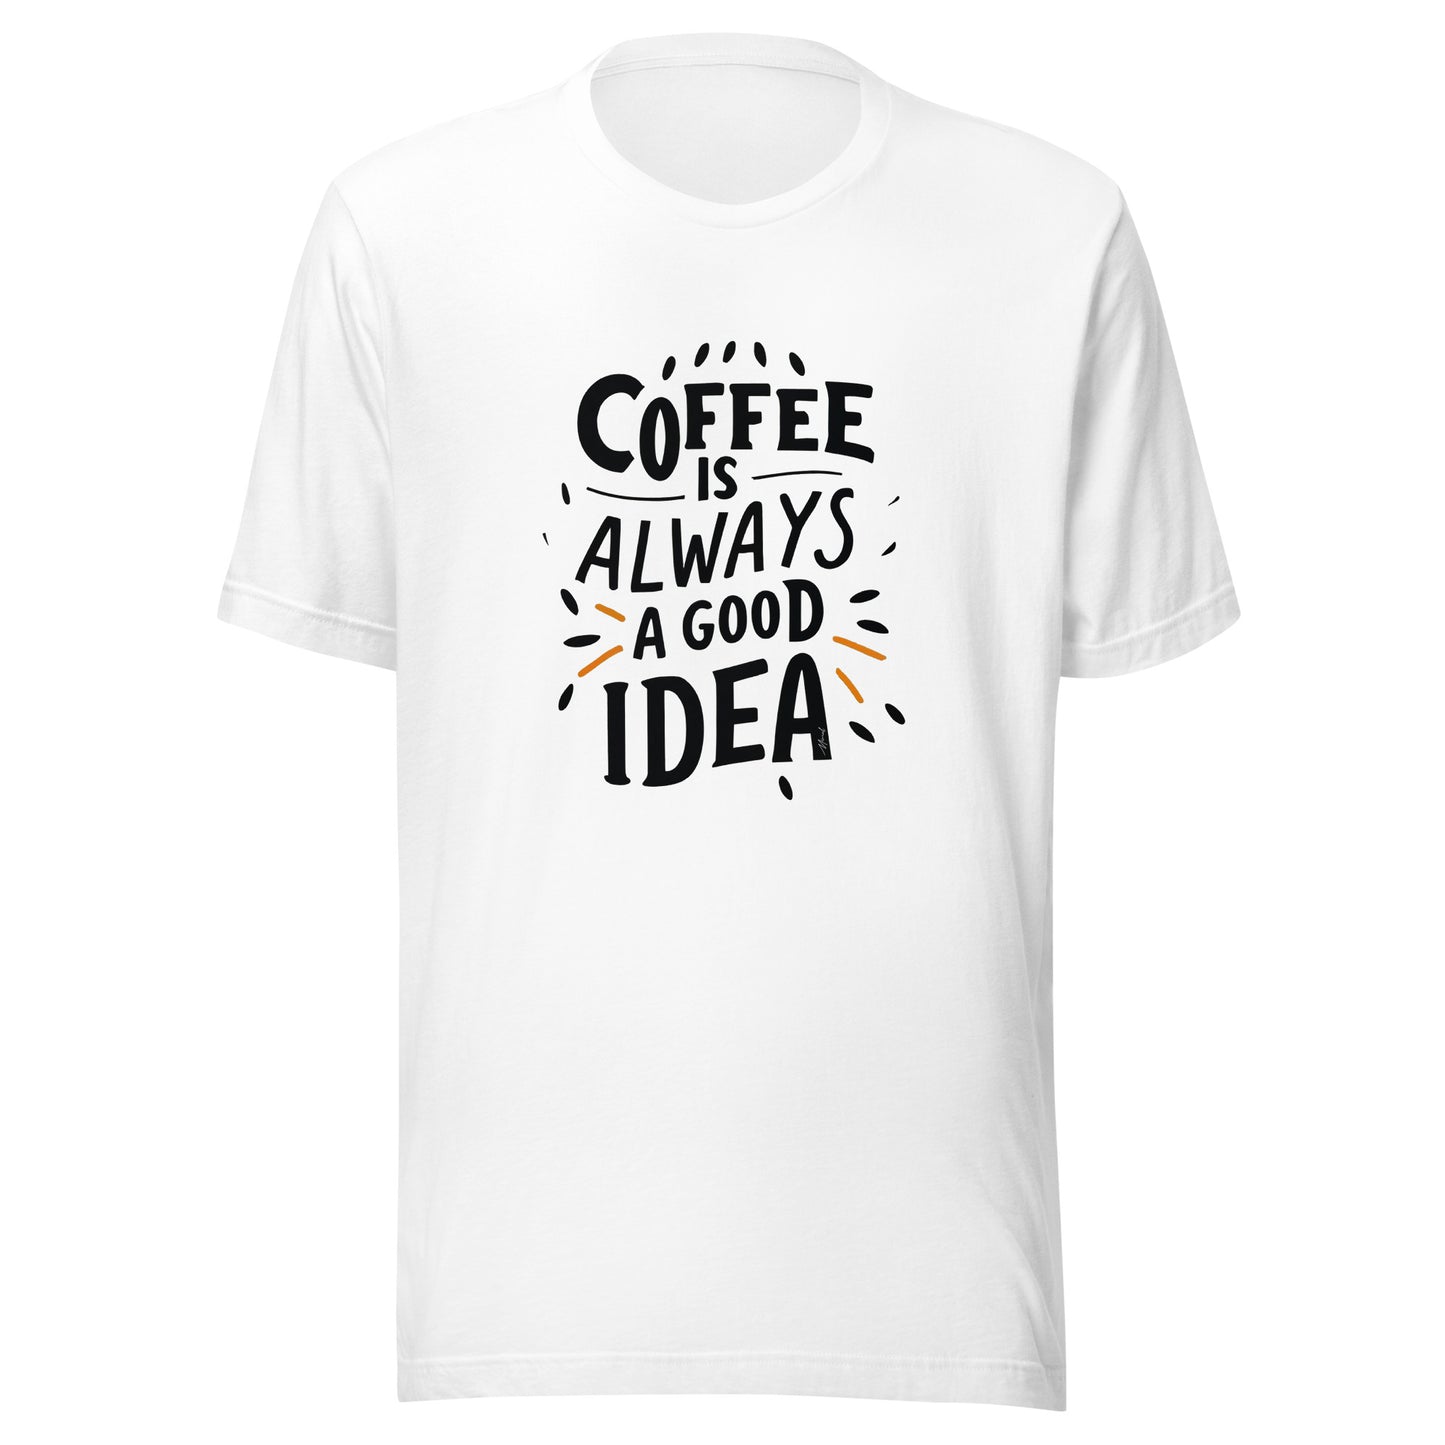 Kaffee ist immer eine gute Idee (Unisex)